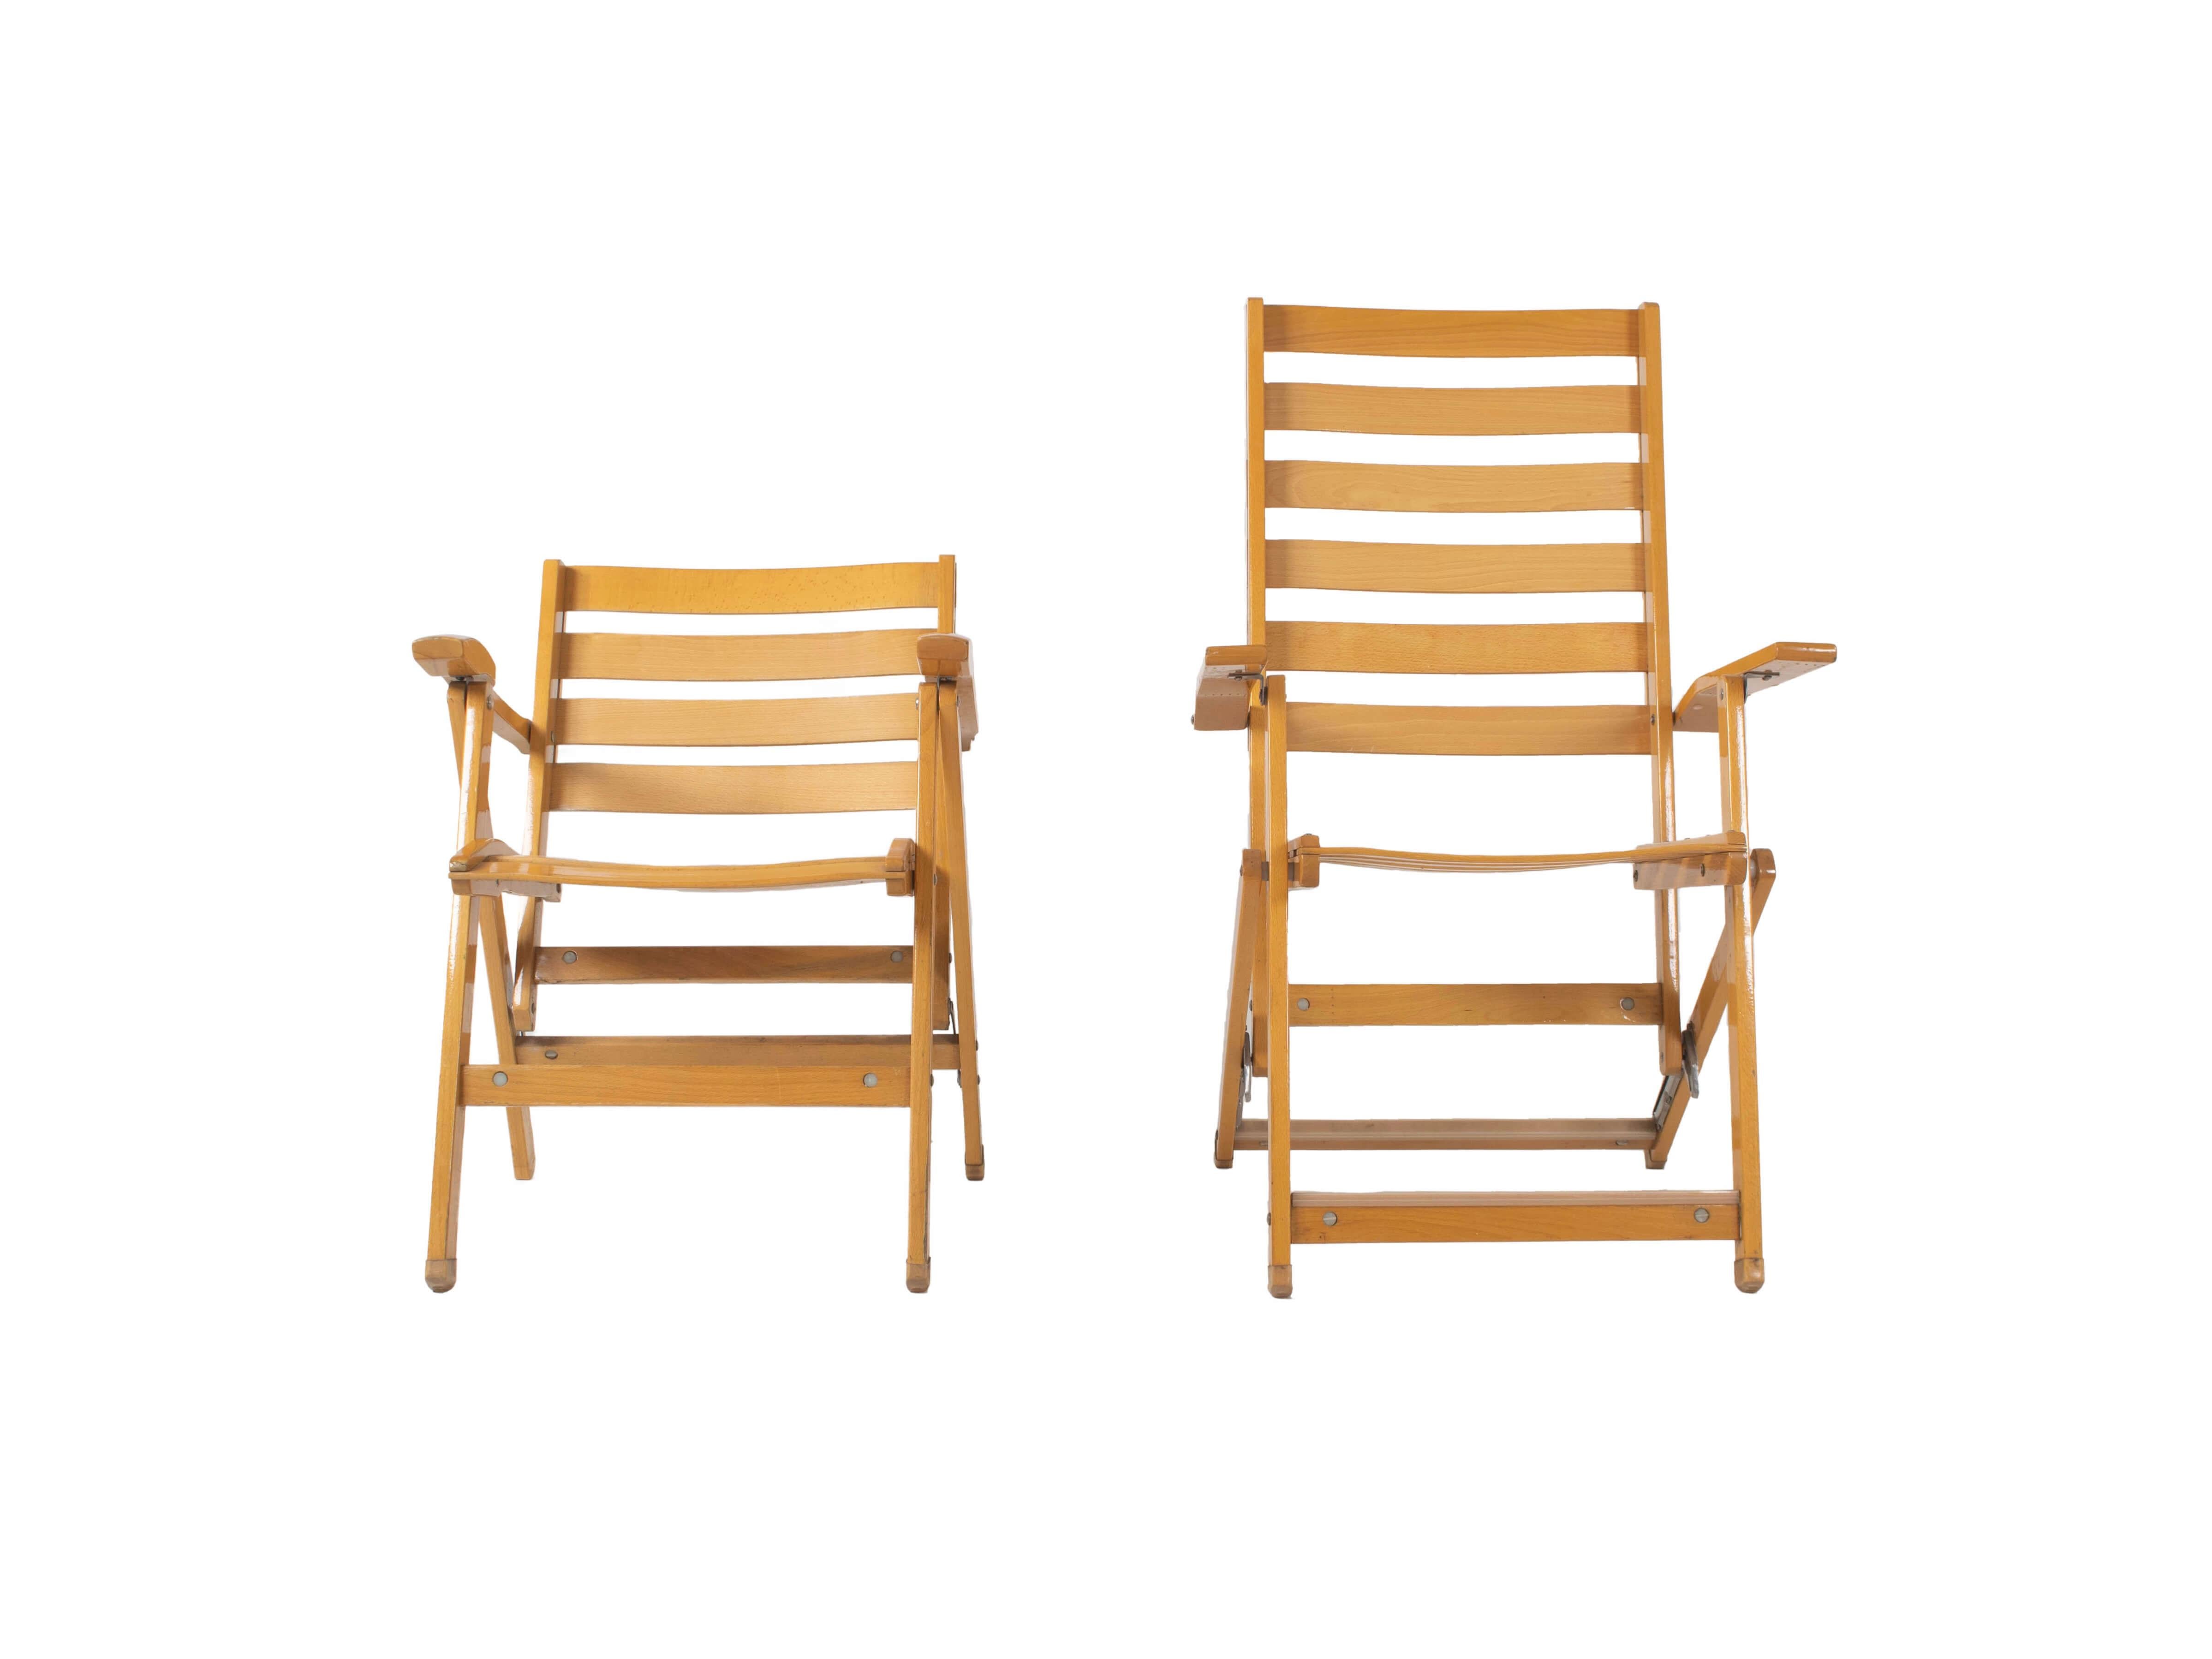 Satz klappbare Liegestühle von Ico Parisi für Fratelli Reguitti aus Buchenholz, Italien 1970er Jahre. Dieses Set besteht aus einem niedrigeren und einem höheren klappbaren Liegestuhl mit den blauen Original-Kissen von Reguitti. Sie sehen auf einem